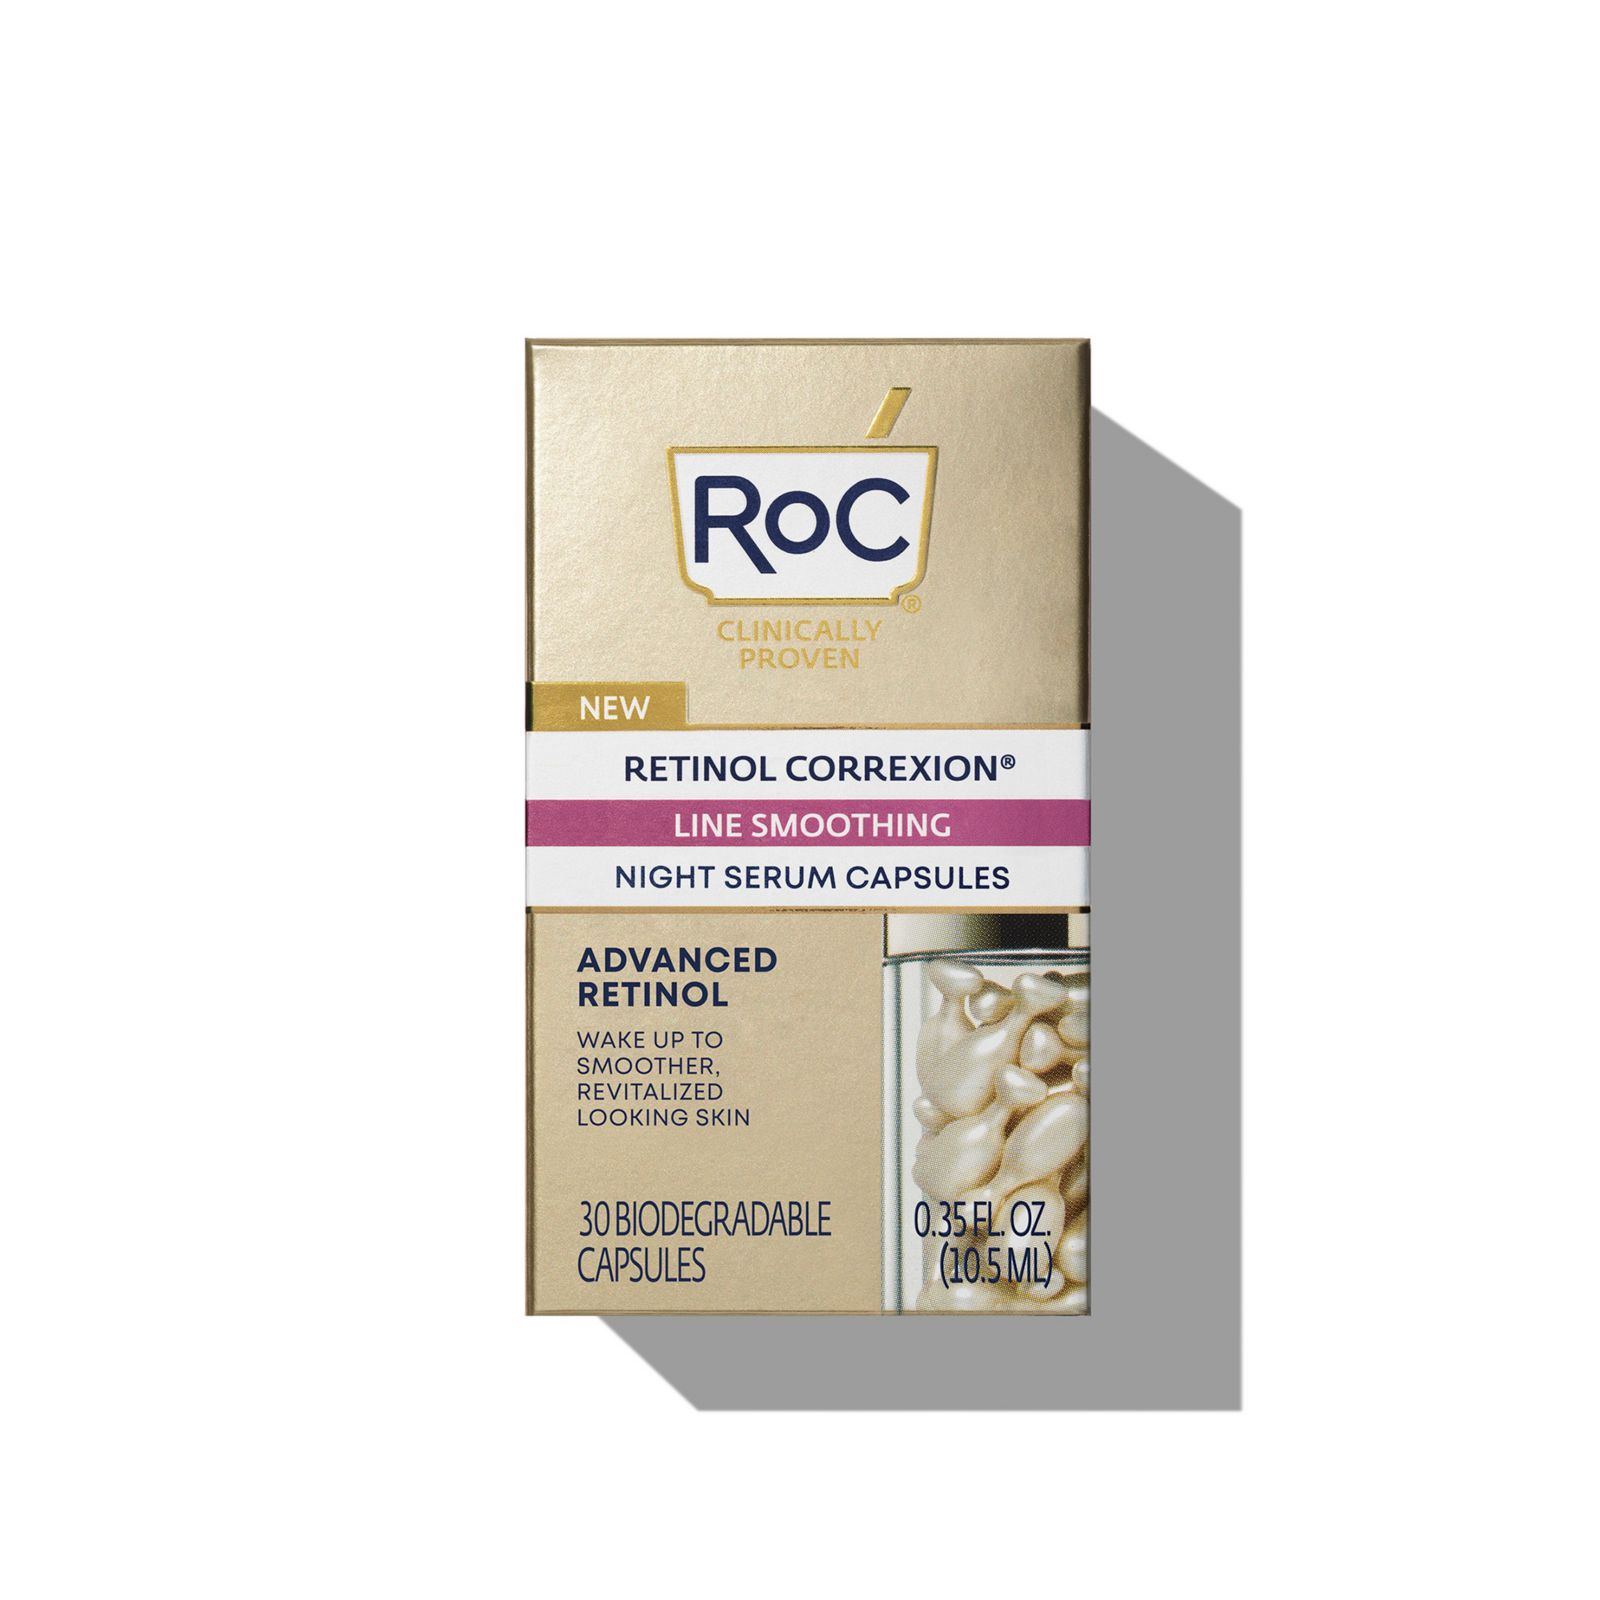 RoC Retinol Correxion Line Smoothing Night Retinol Serum, Skin-care ingredients not to mix